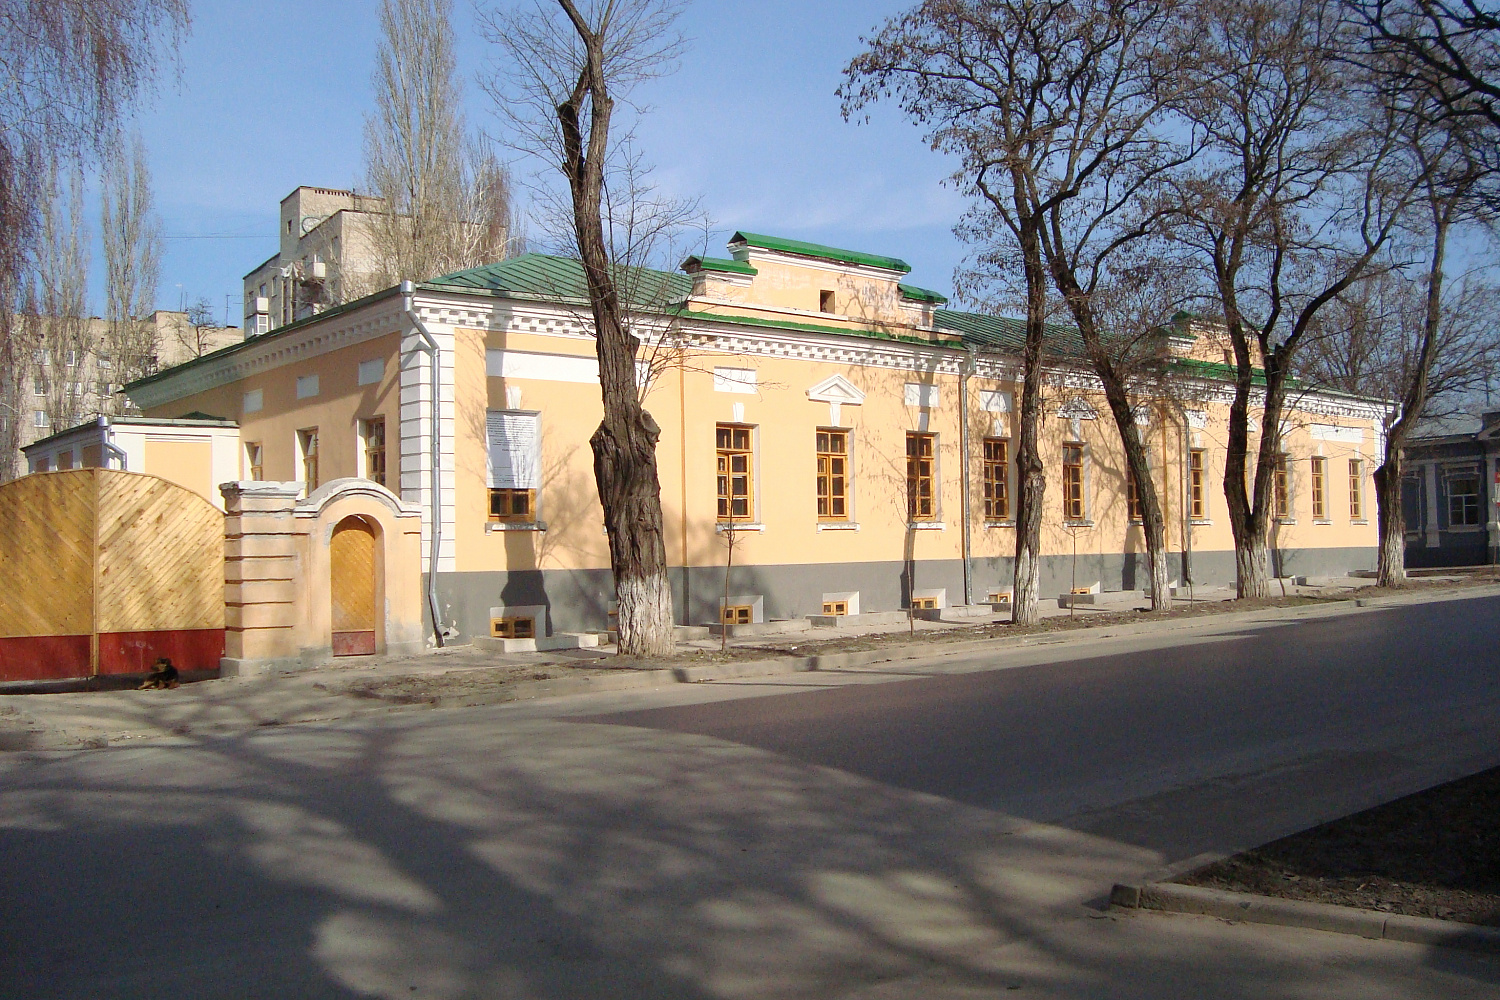 Детский санаторий «Березка» (бывший Дворец Александра I) после реставрации.  Фотография 2010-х гг.